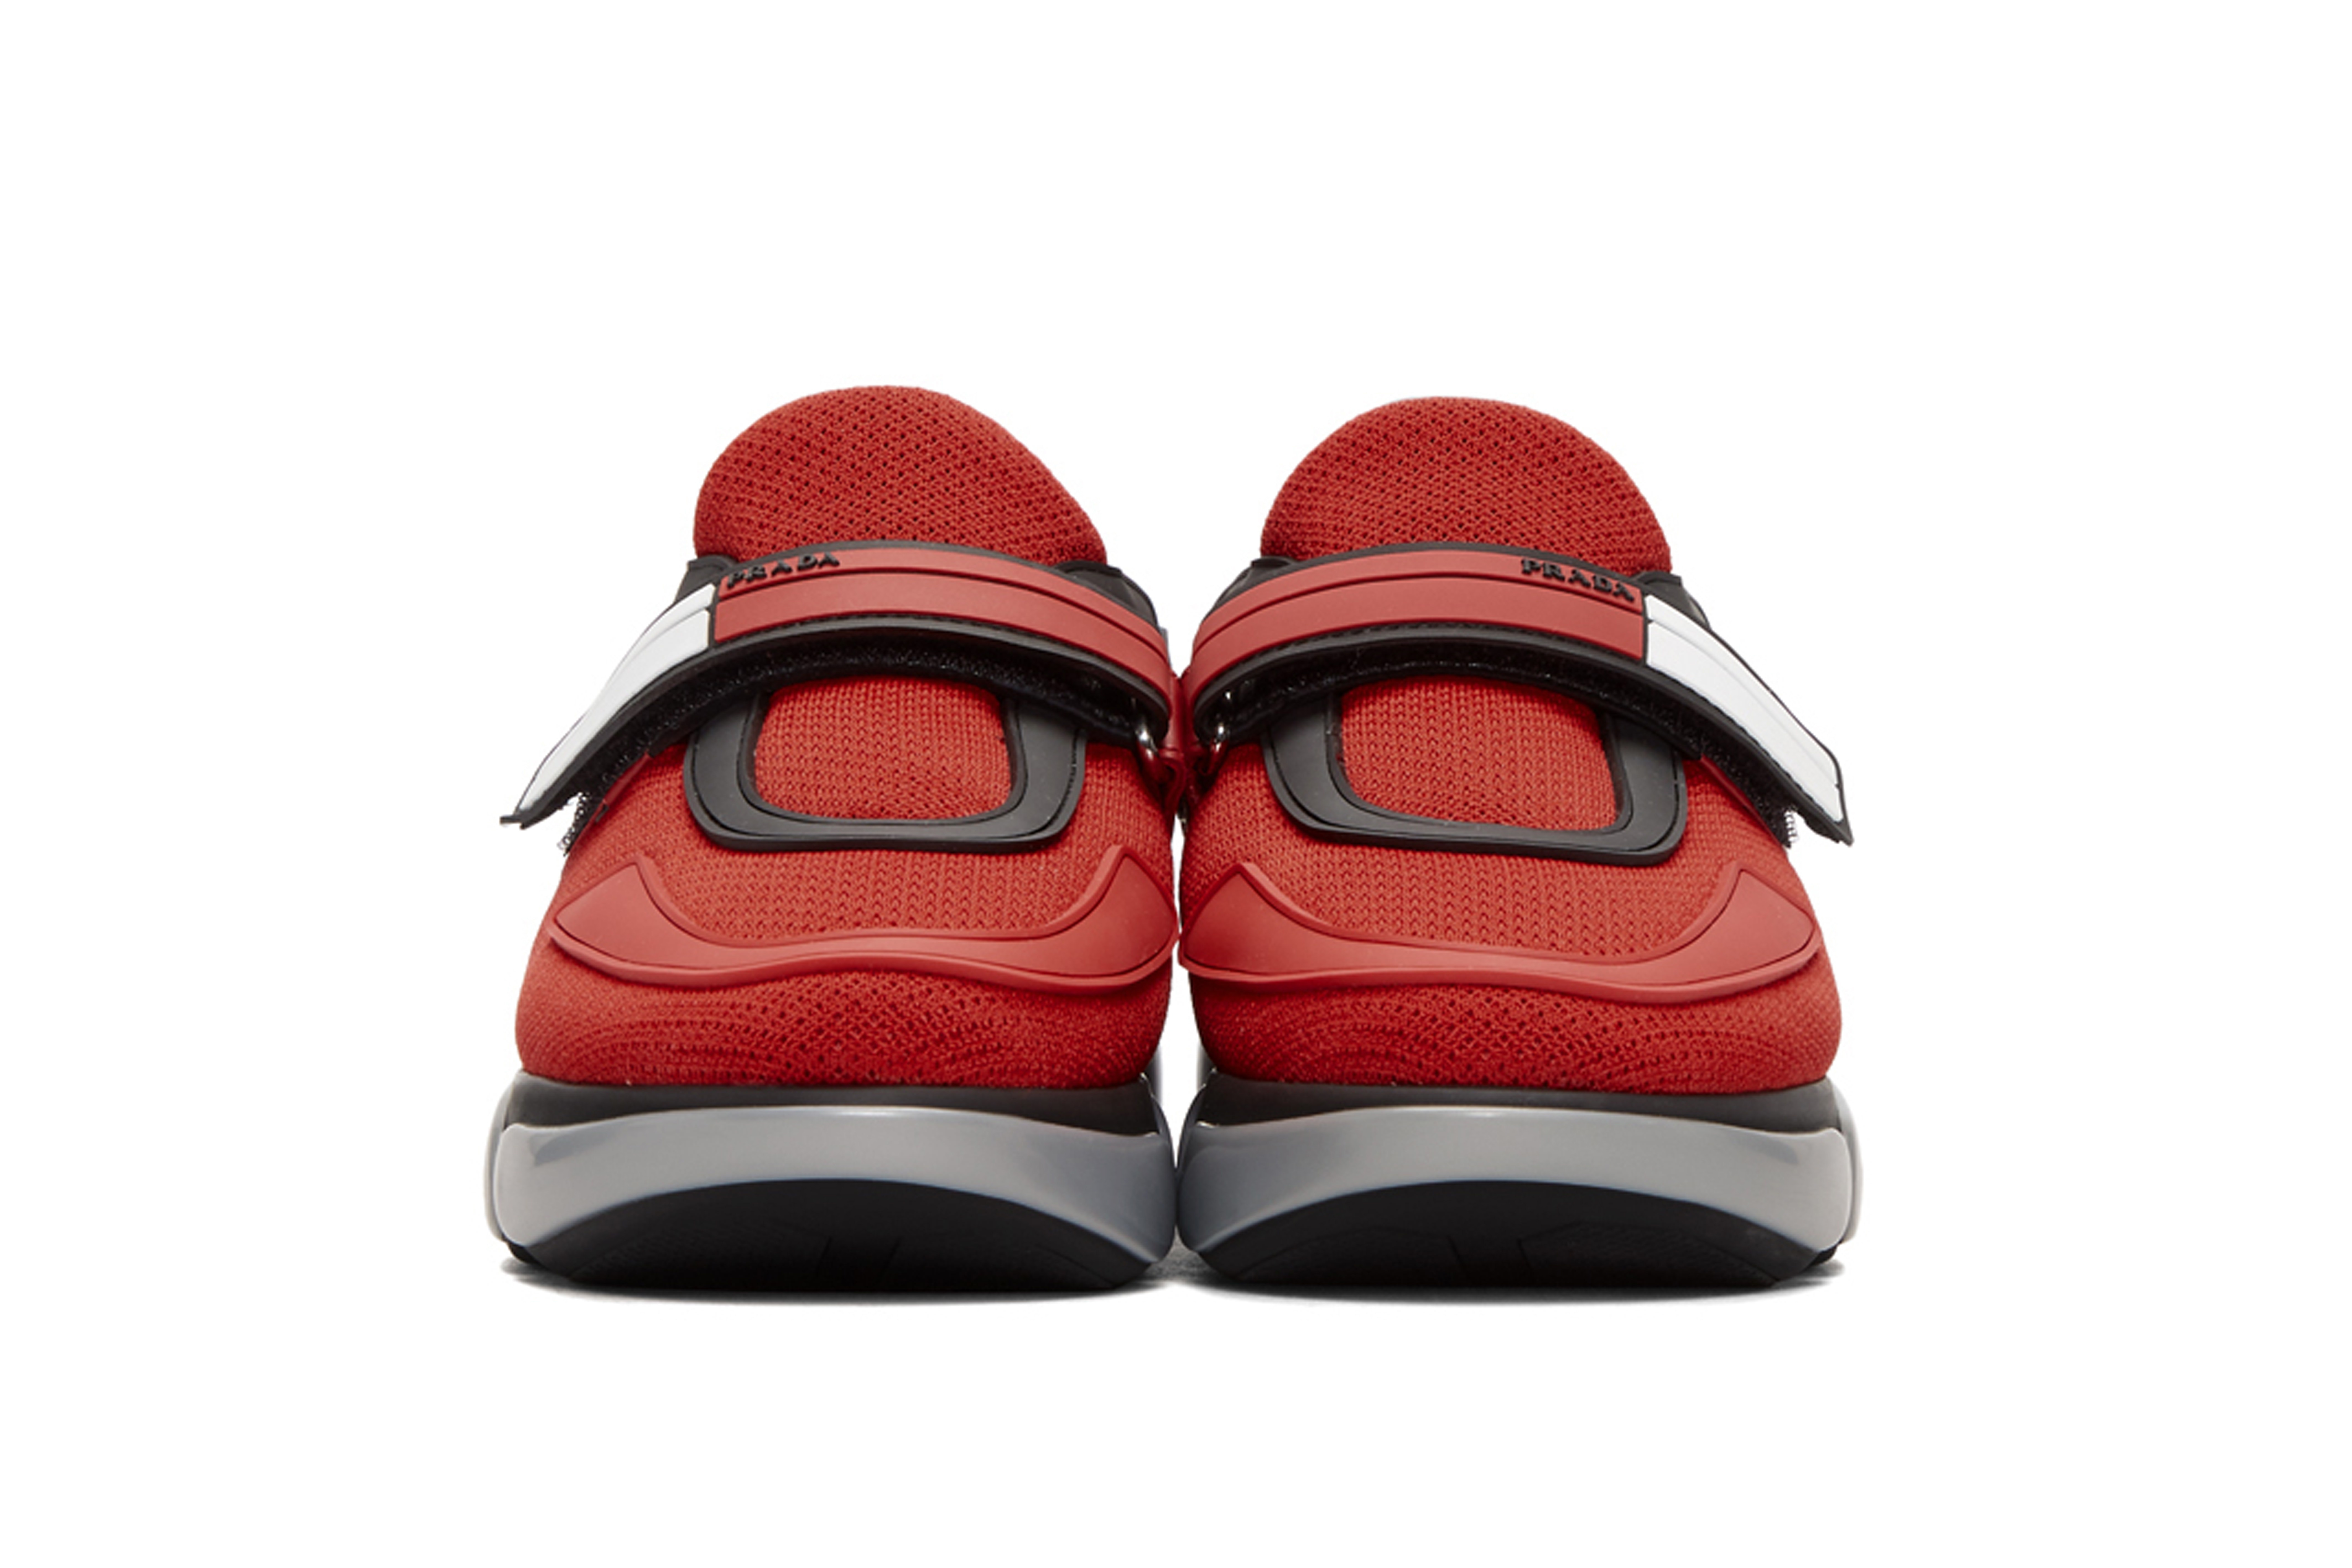 Prada Cloudbust Sneaker in Black and Red Grey Colorway Instagram Shoe Streetwear Street Style Miuccia Prada